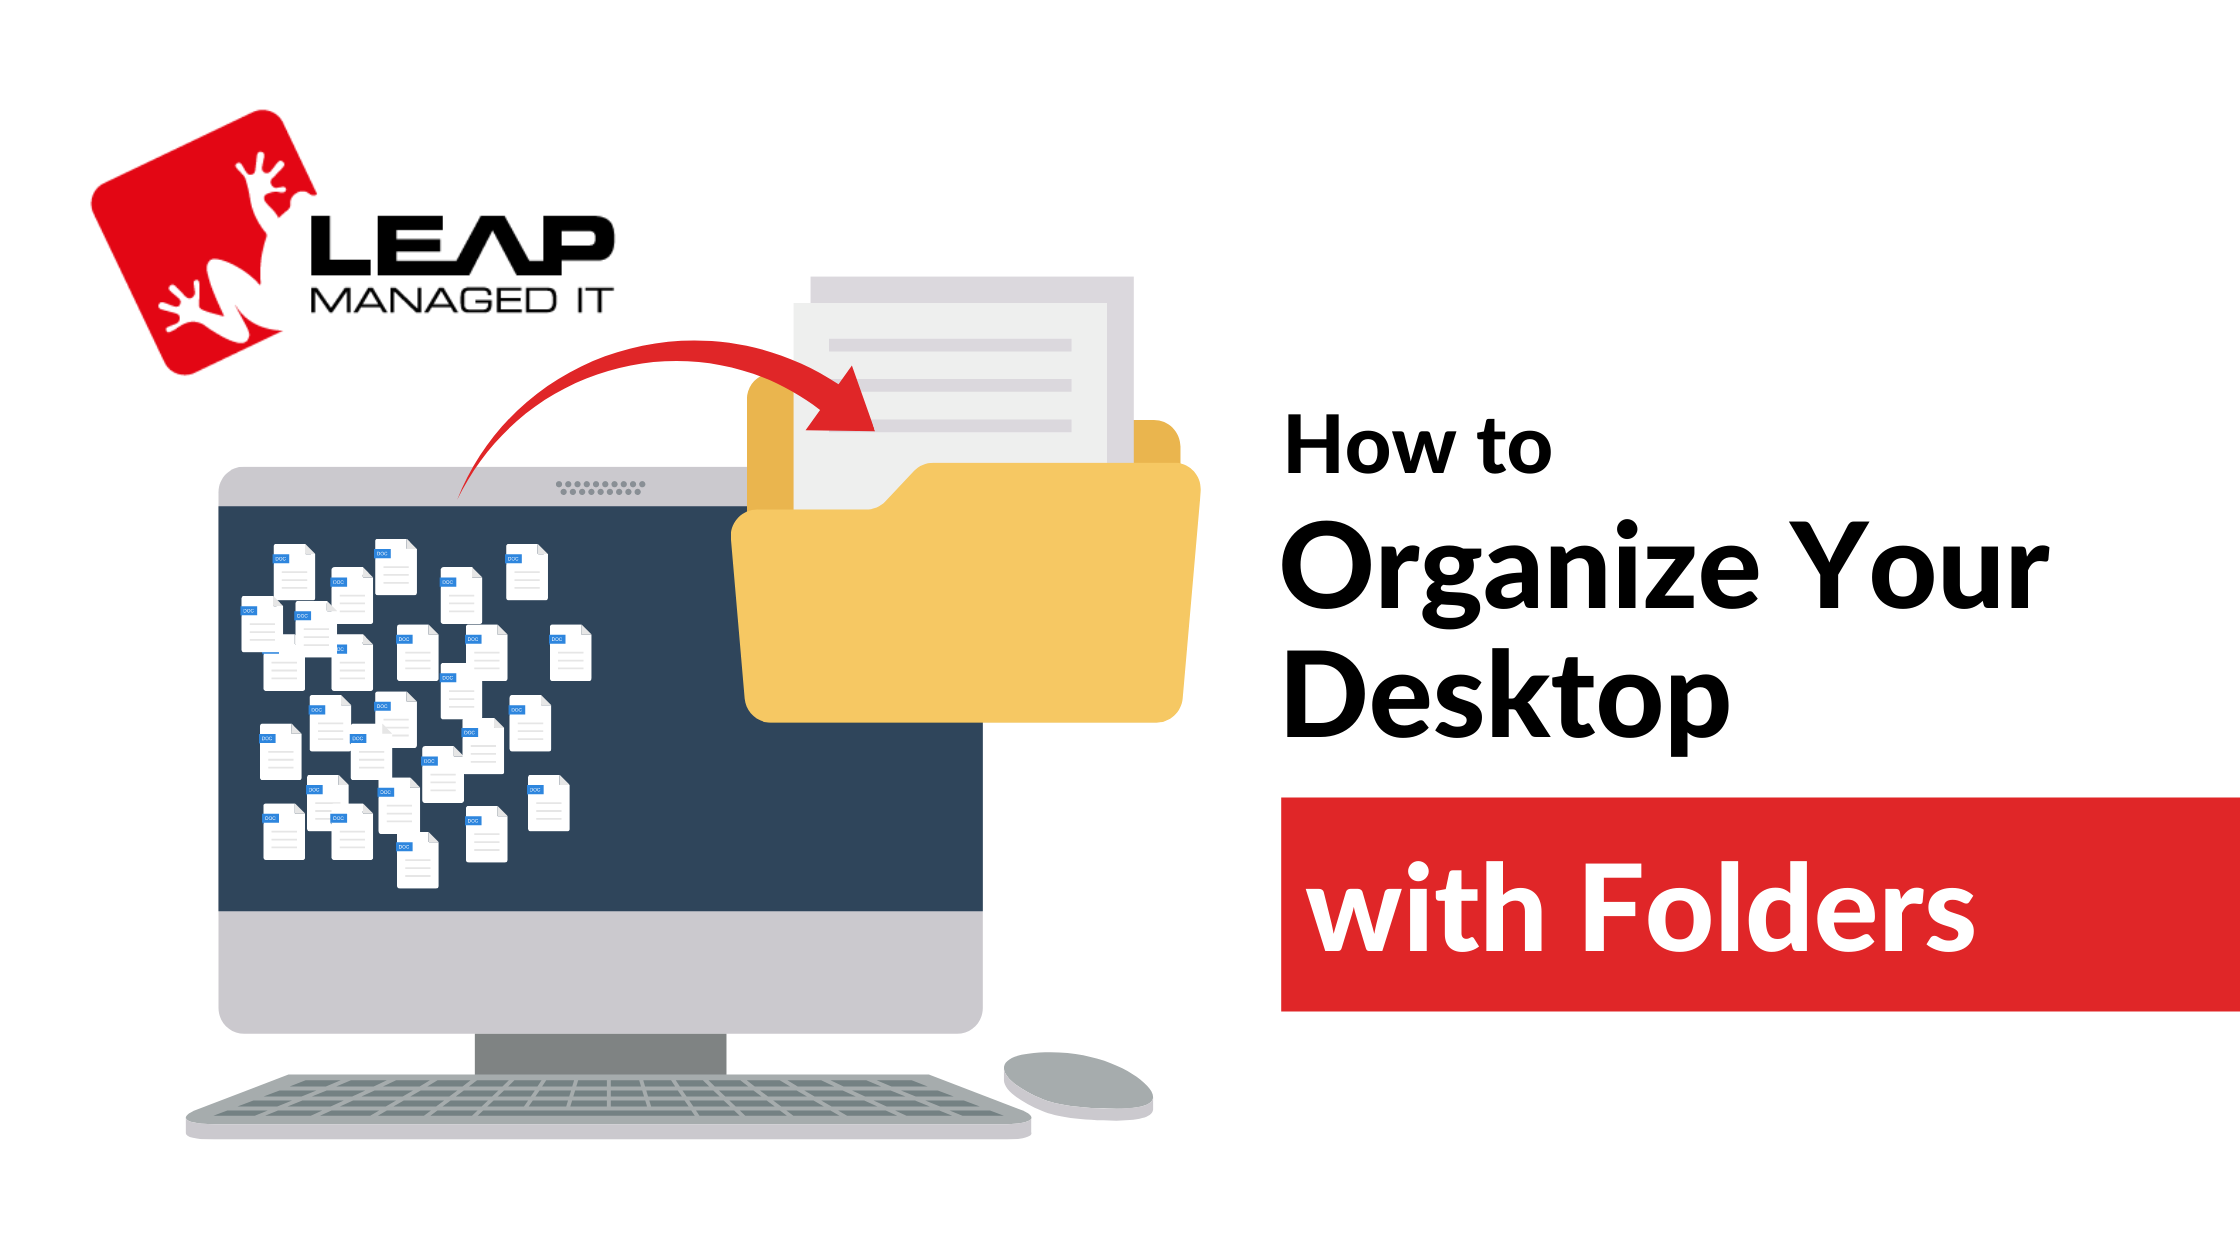 Indianapolis Help Desk Tip: Make a Desktop Folder